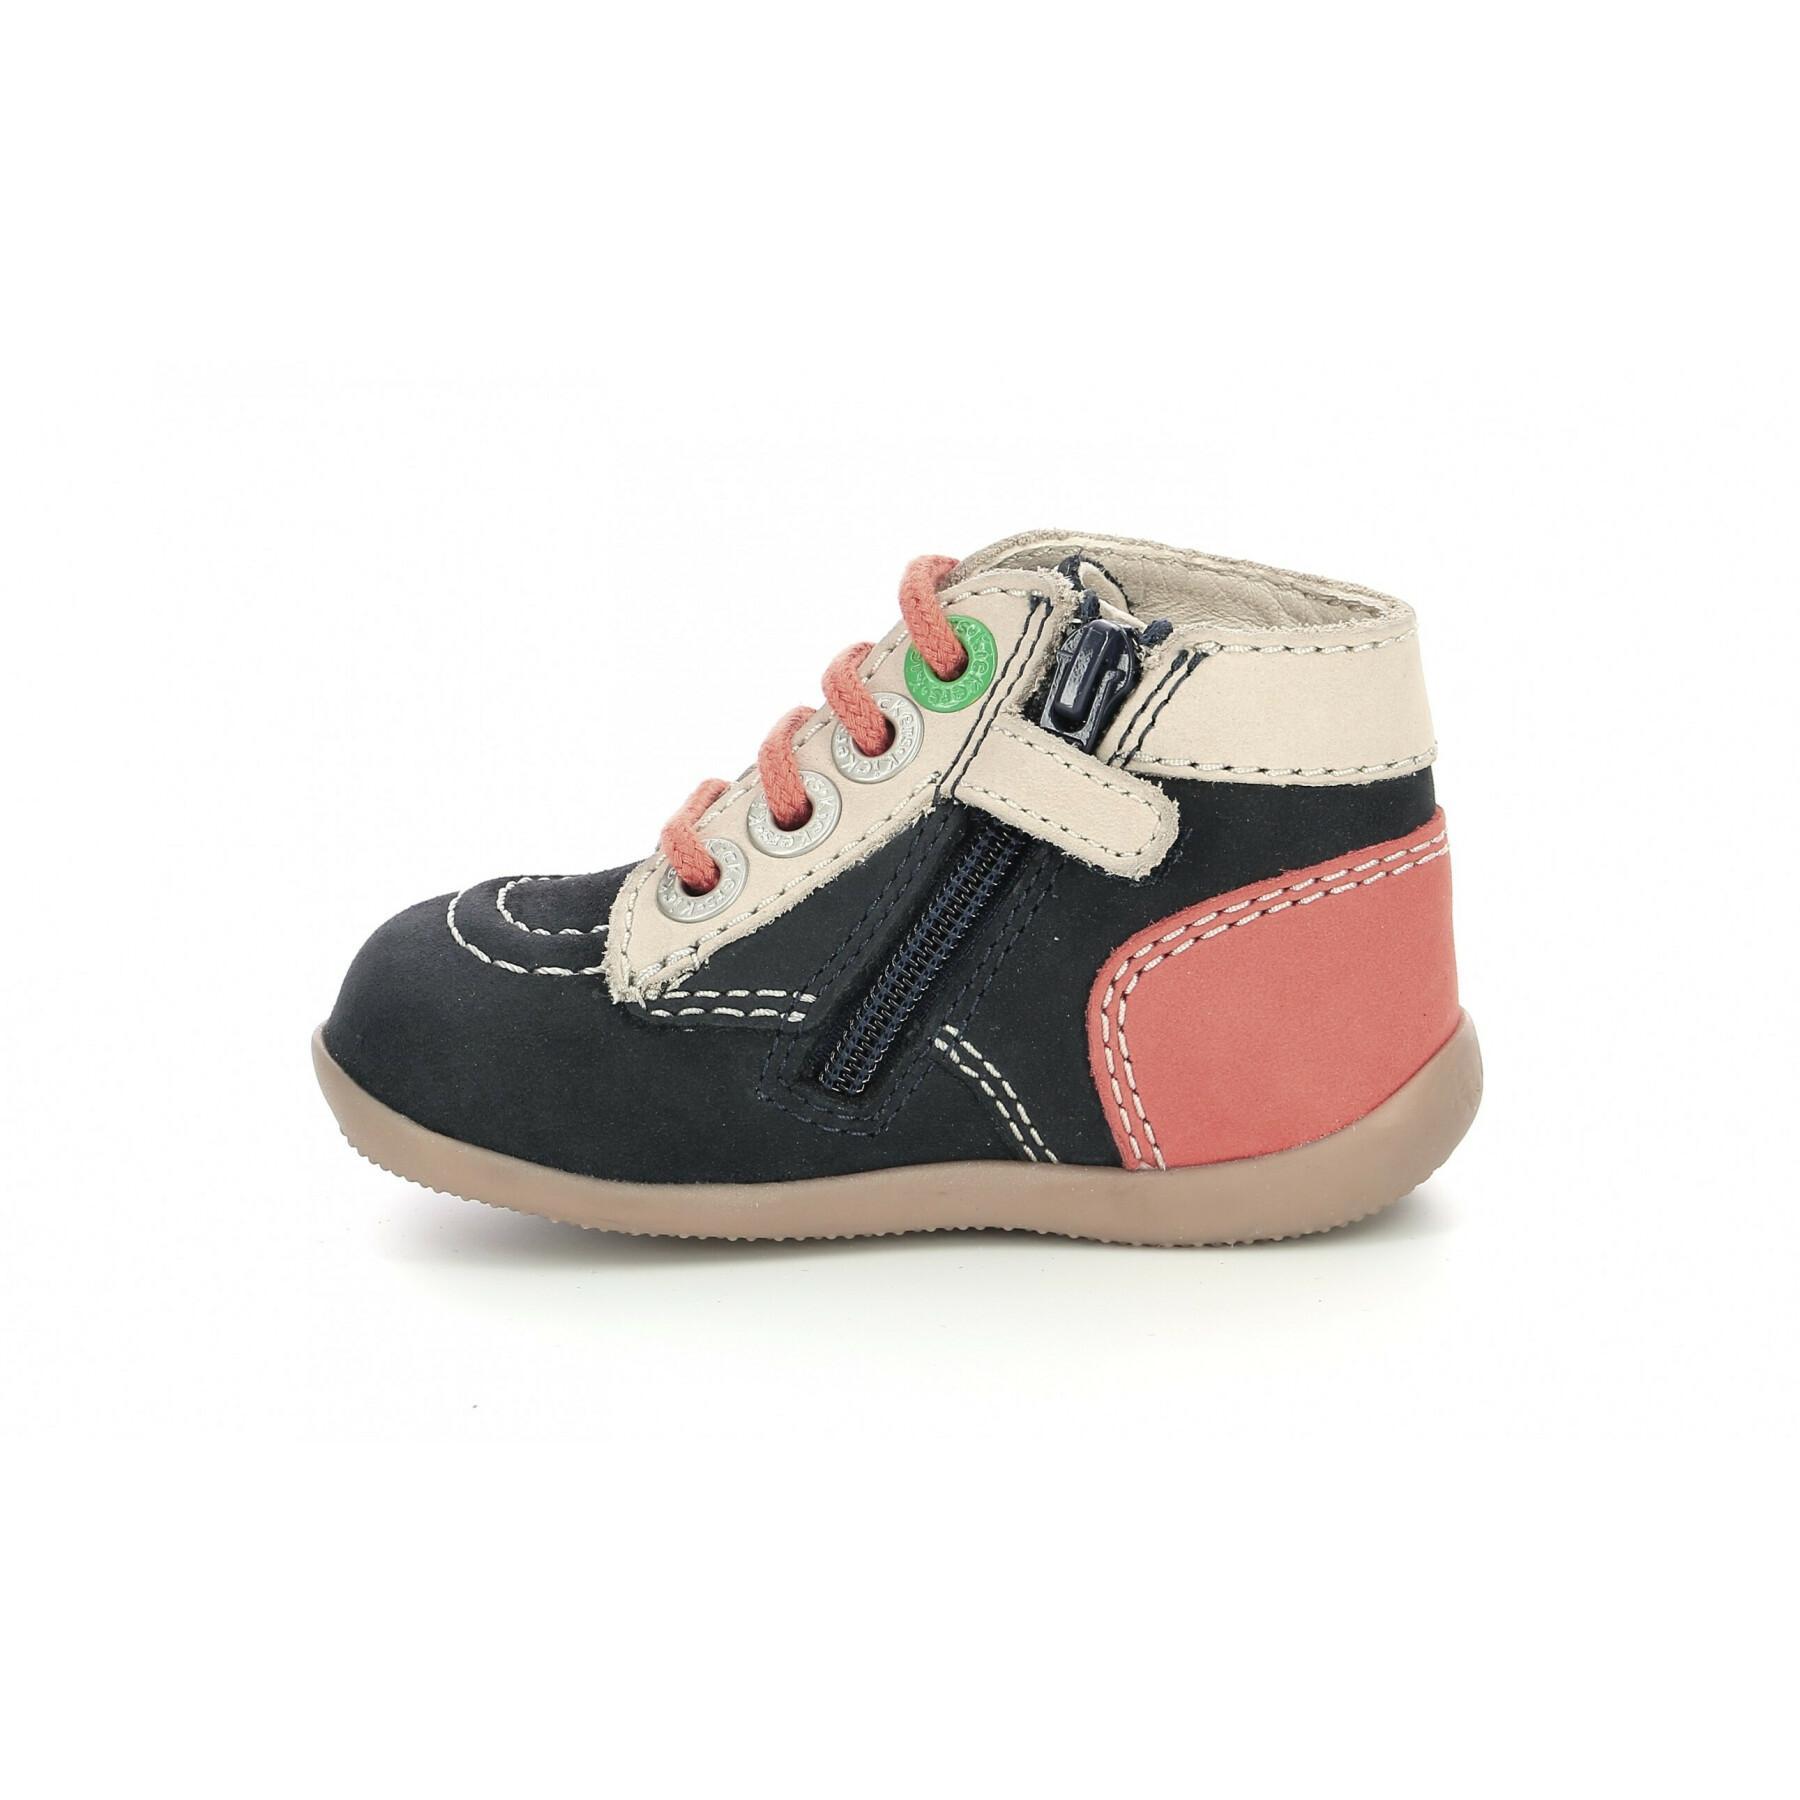 Chaussures bébé Kickers Bonzip-2